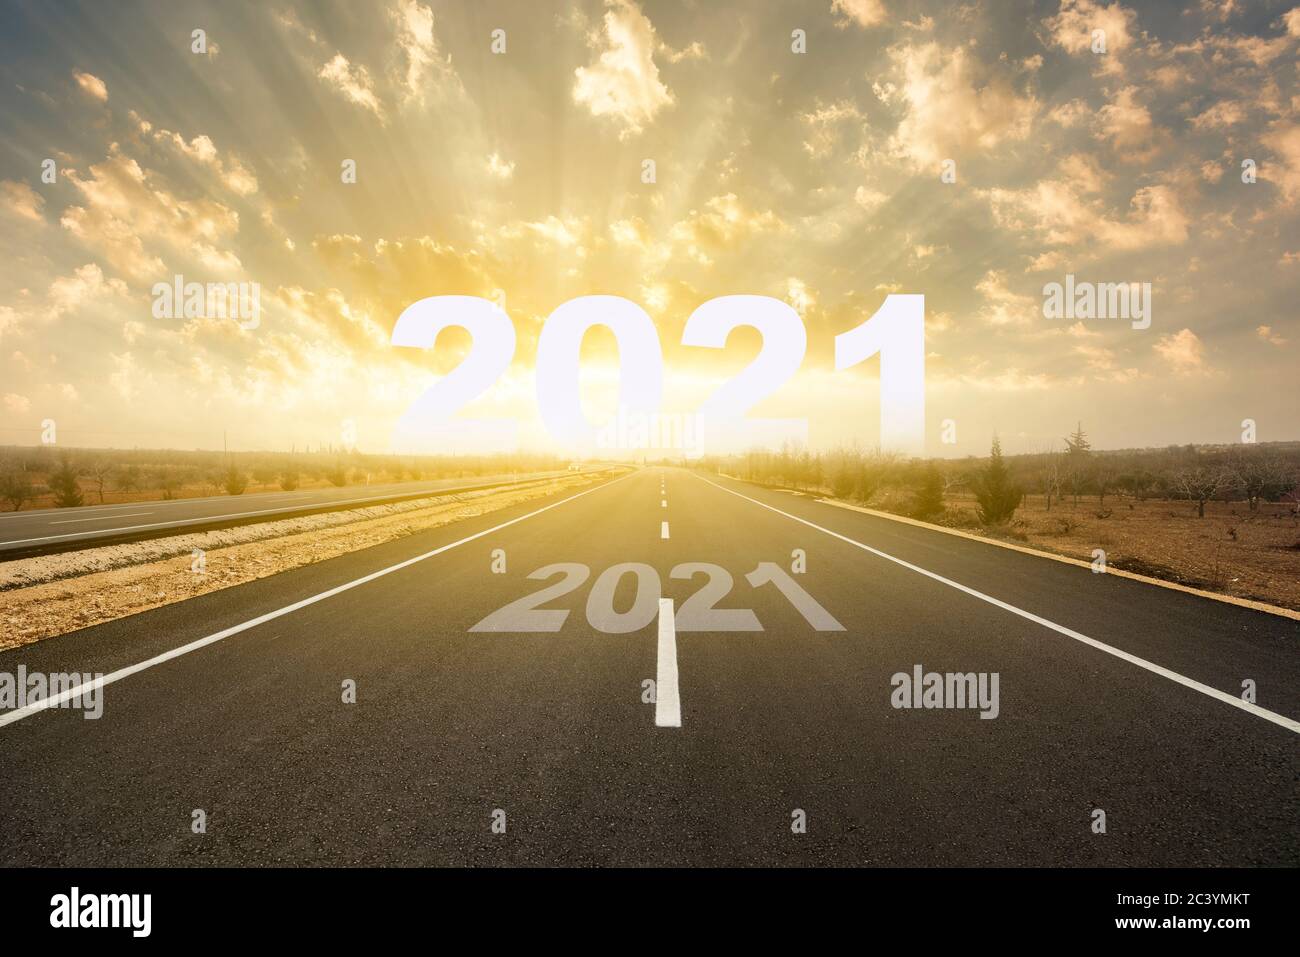 La parola 2021 dietro strada asfaltata al tramonto. Concetto per l'anno di visione 2021. Concetto di nuovo anno Foto Stock